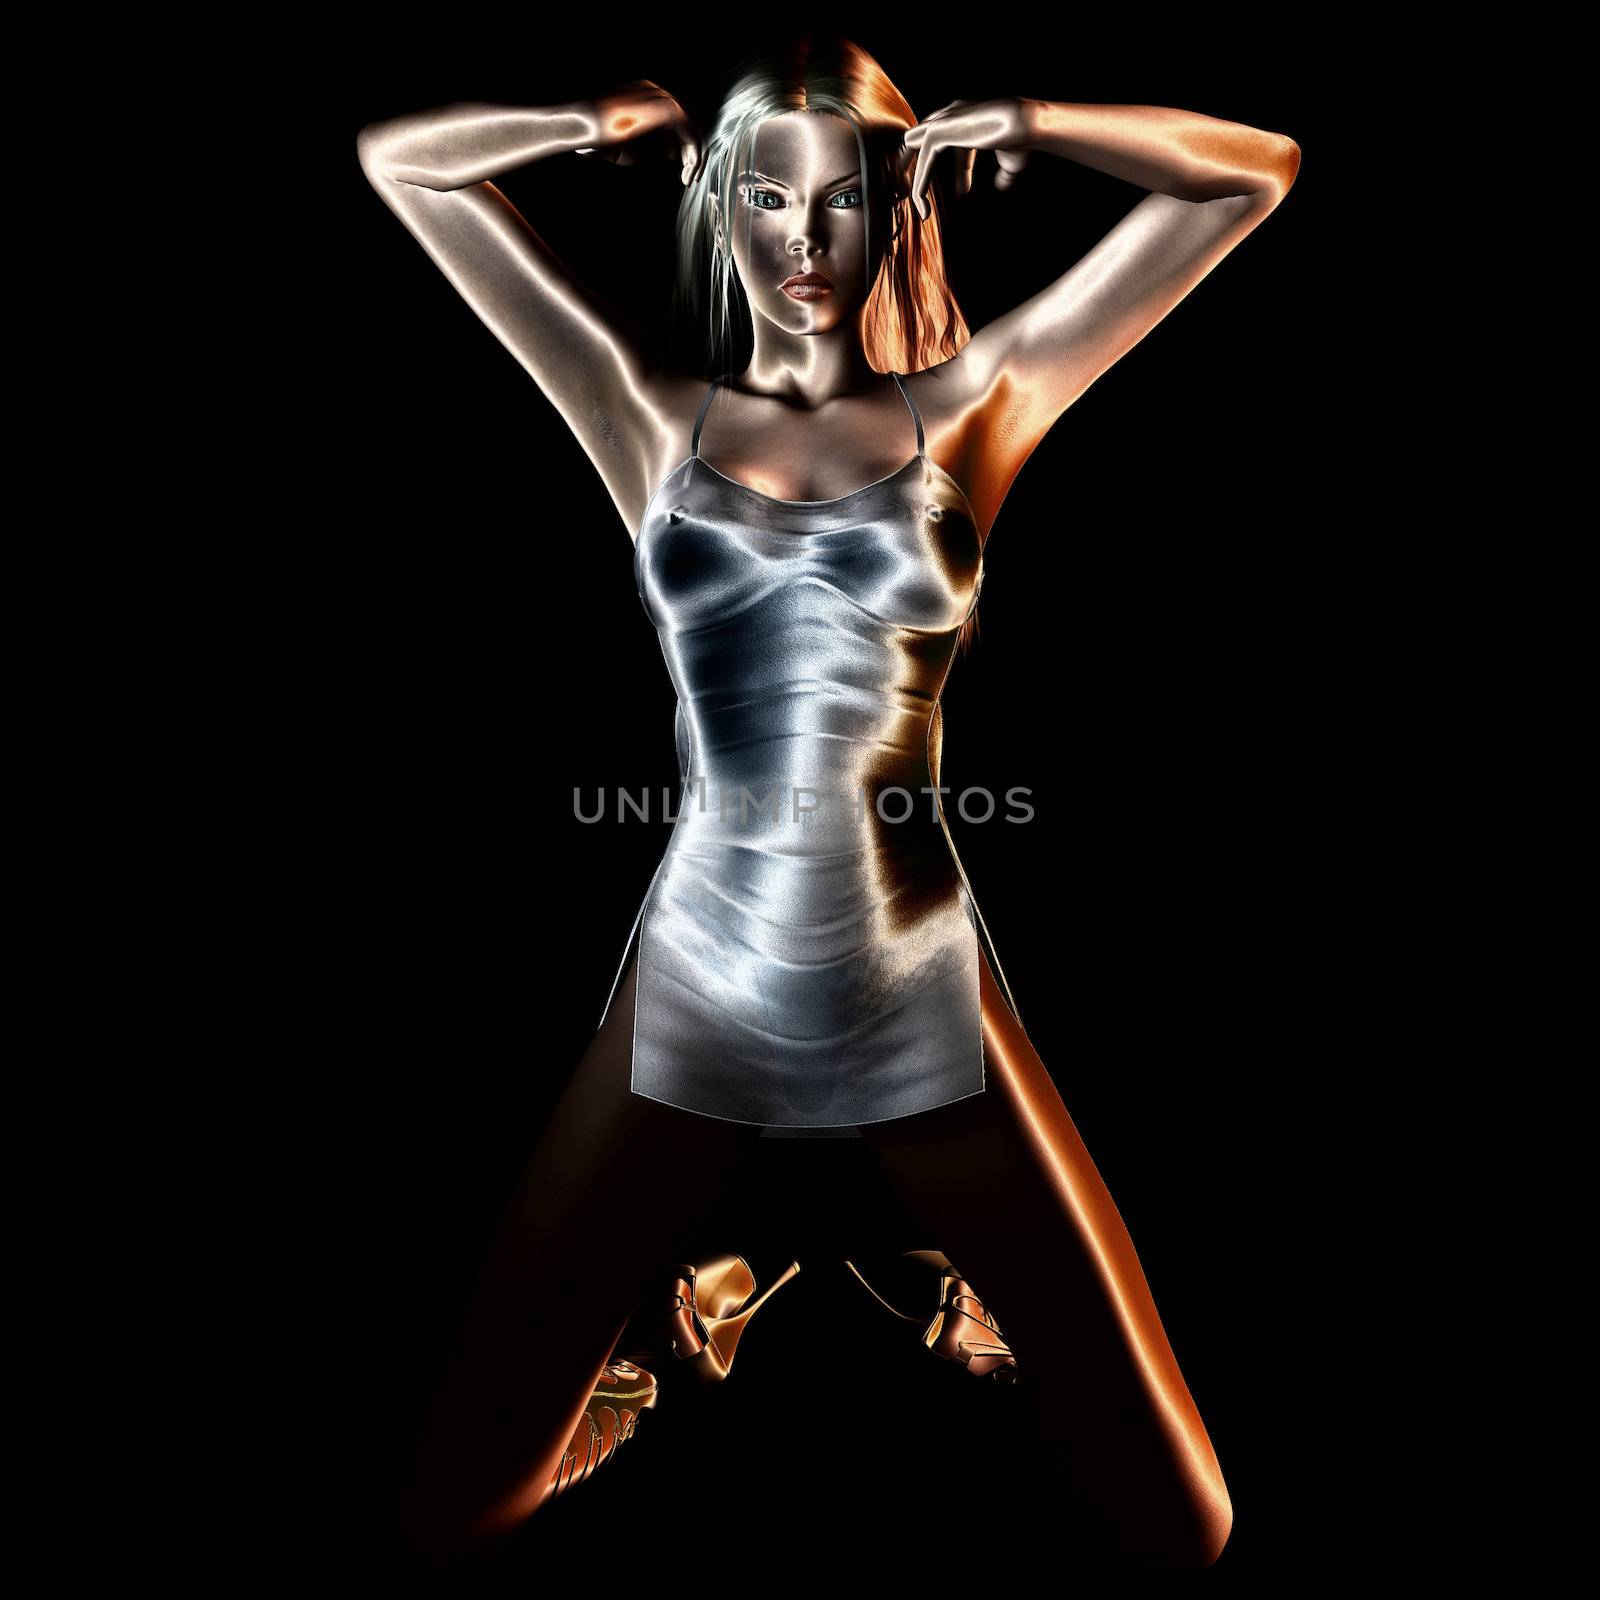 Digital rendering of a posing girl